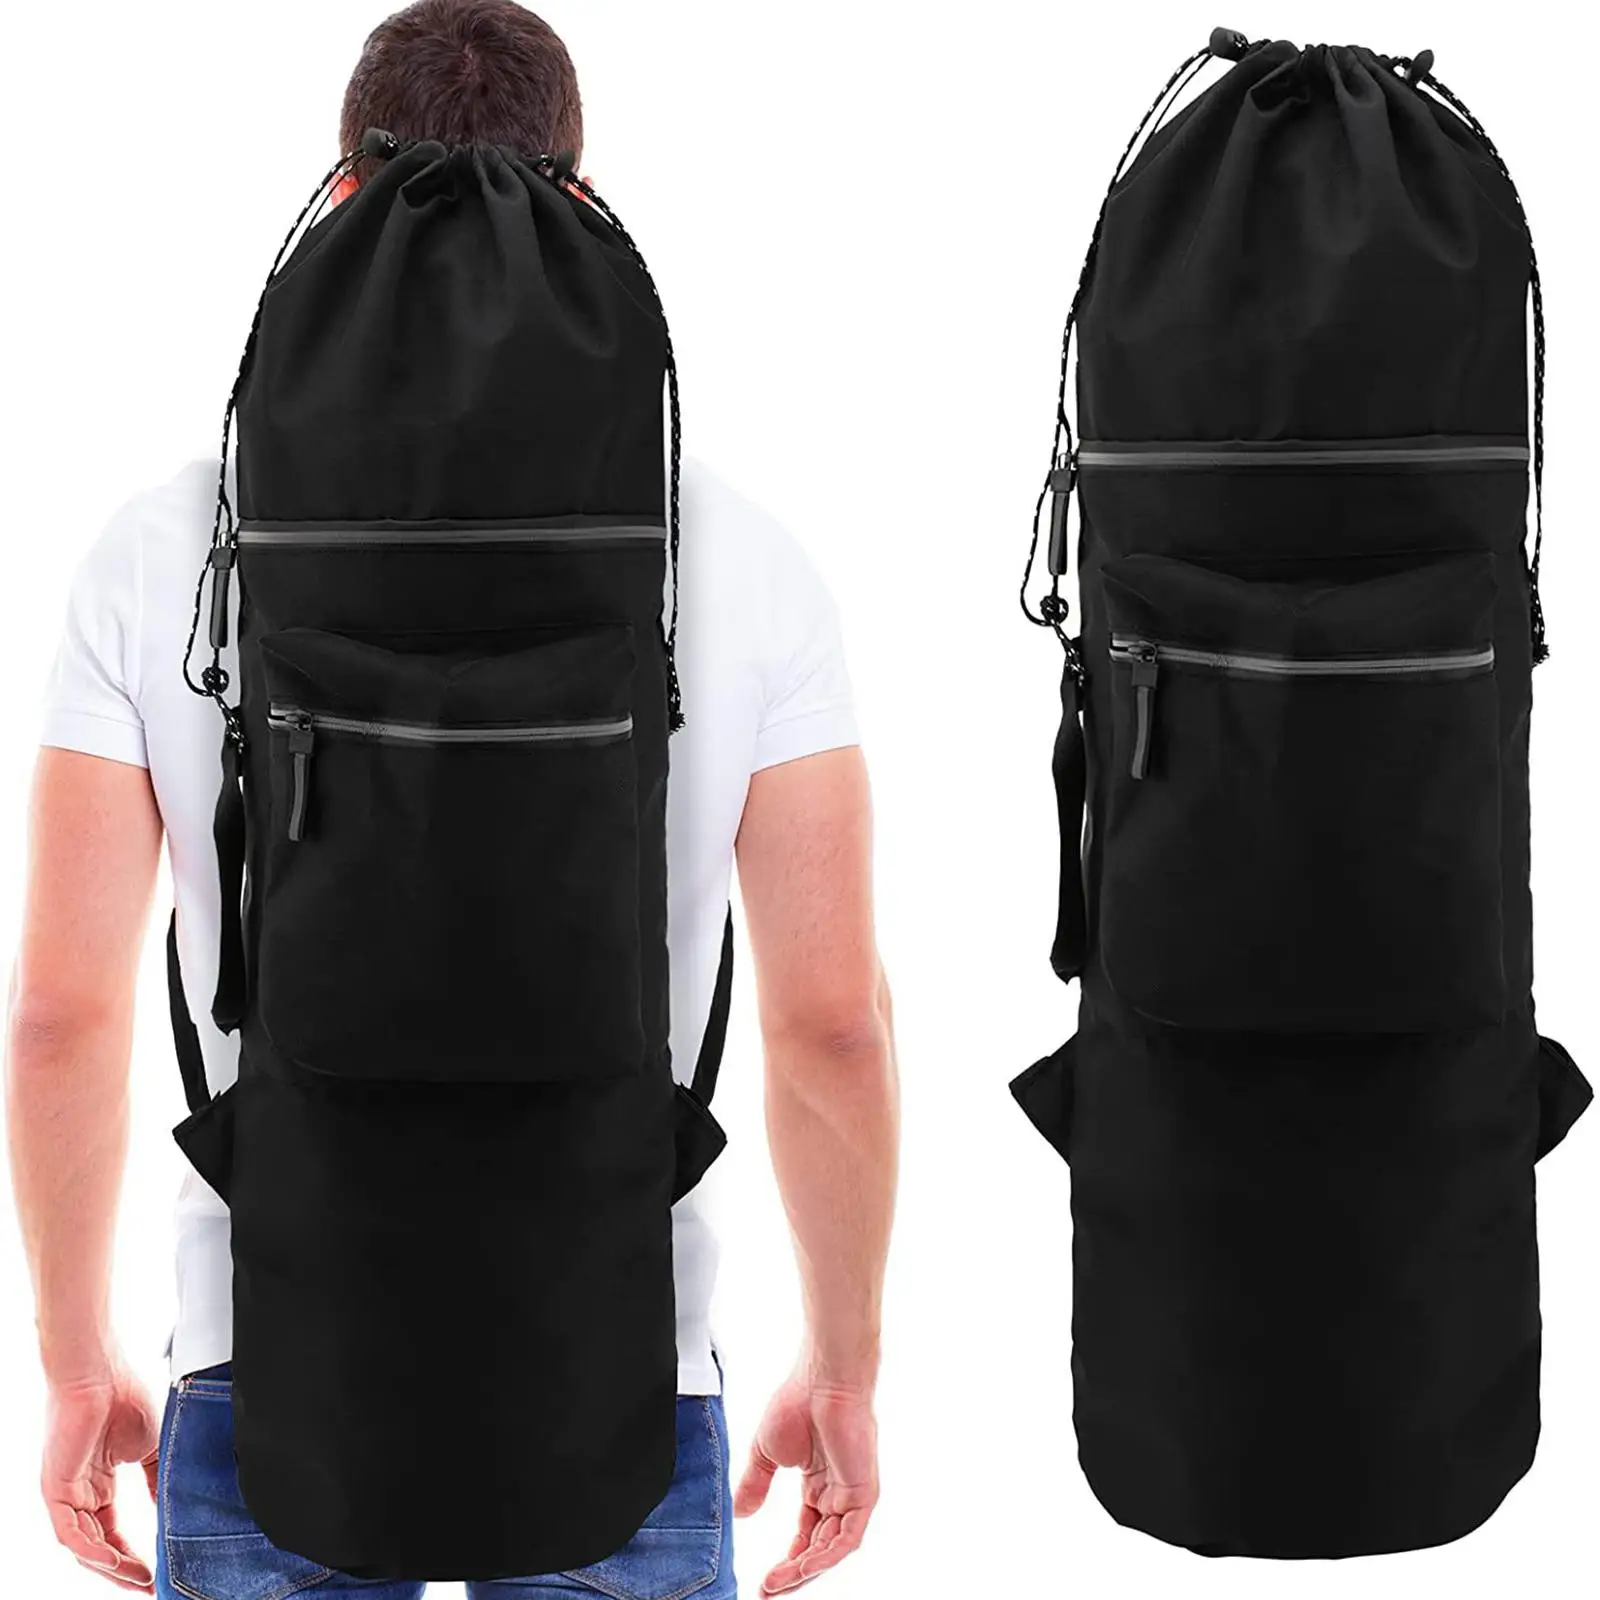 Skateboard Backpack Carry Bag 600D Oxford Cloth Adjustable Shoulder Straps